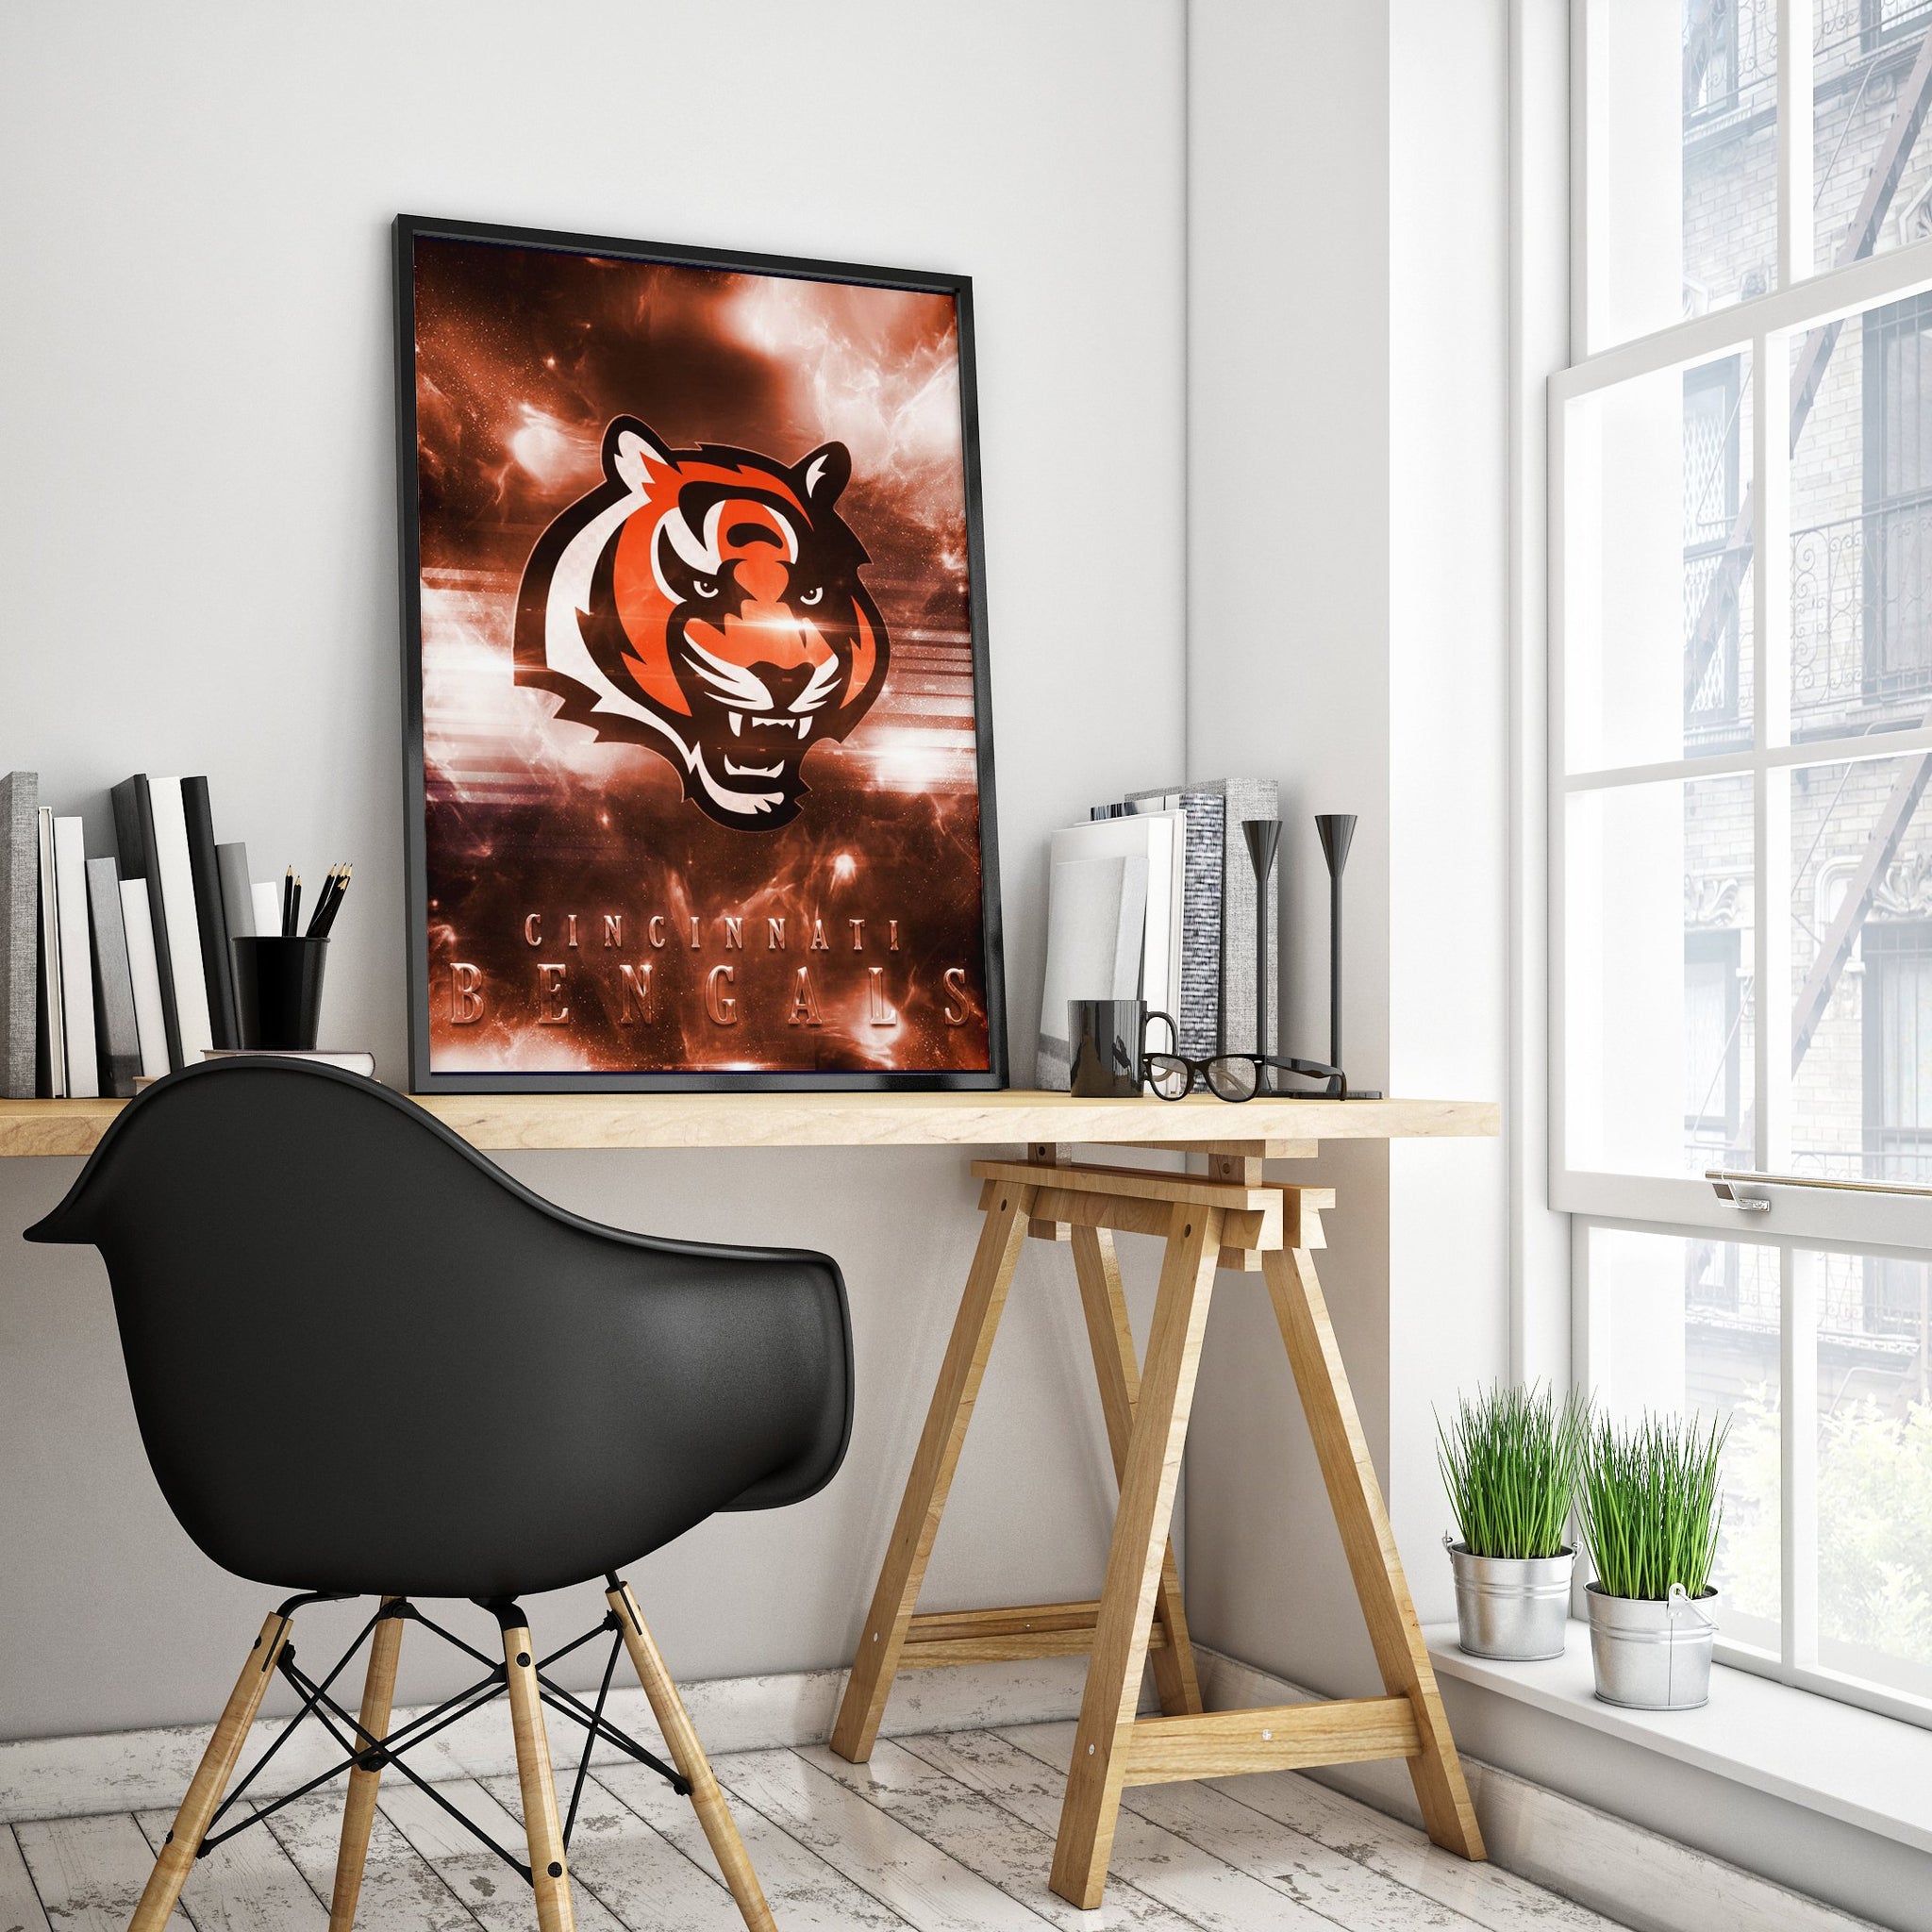 Cincinnati Bengals Logo Art Premium Poster - Team Spirit Store USA 